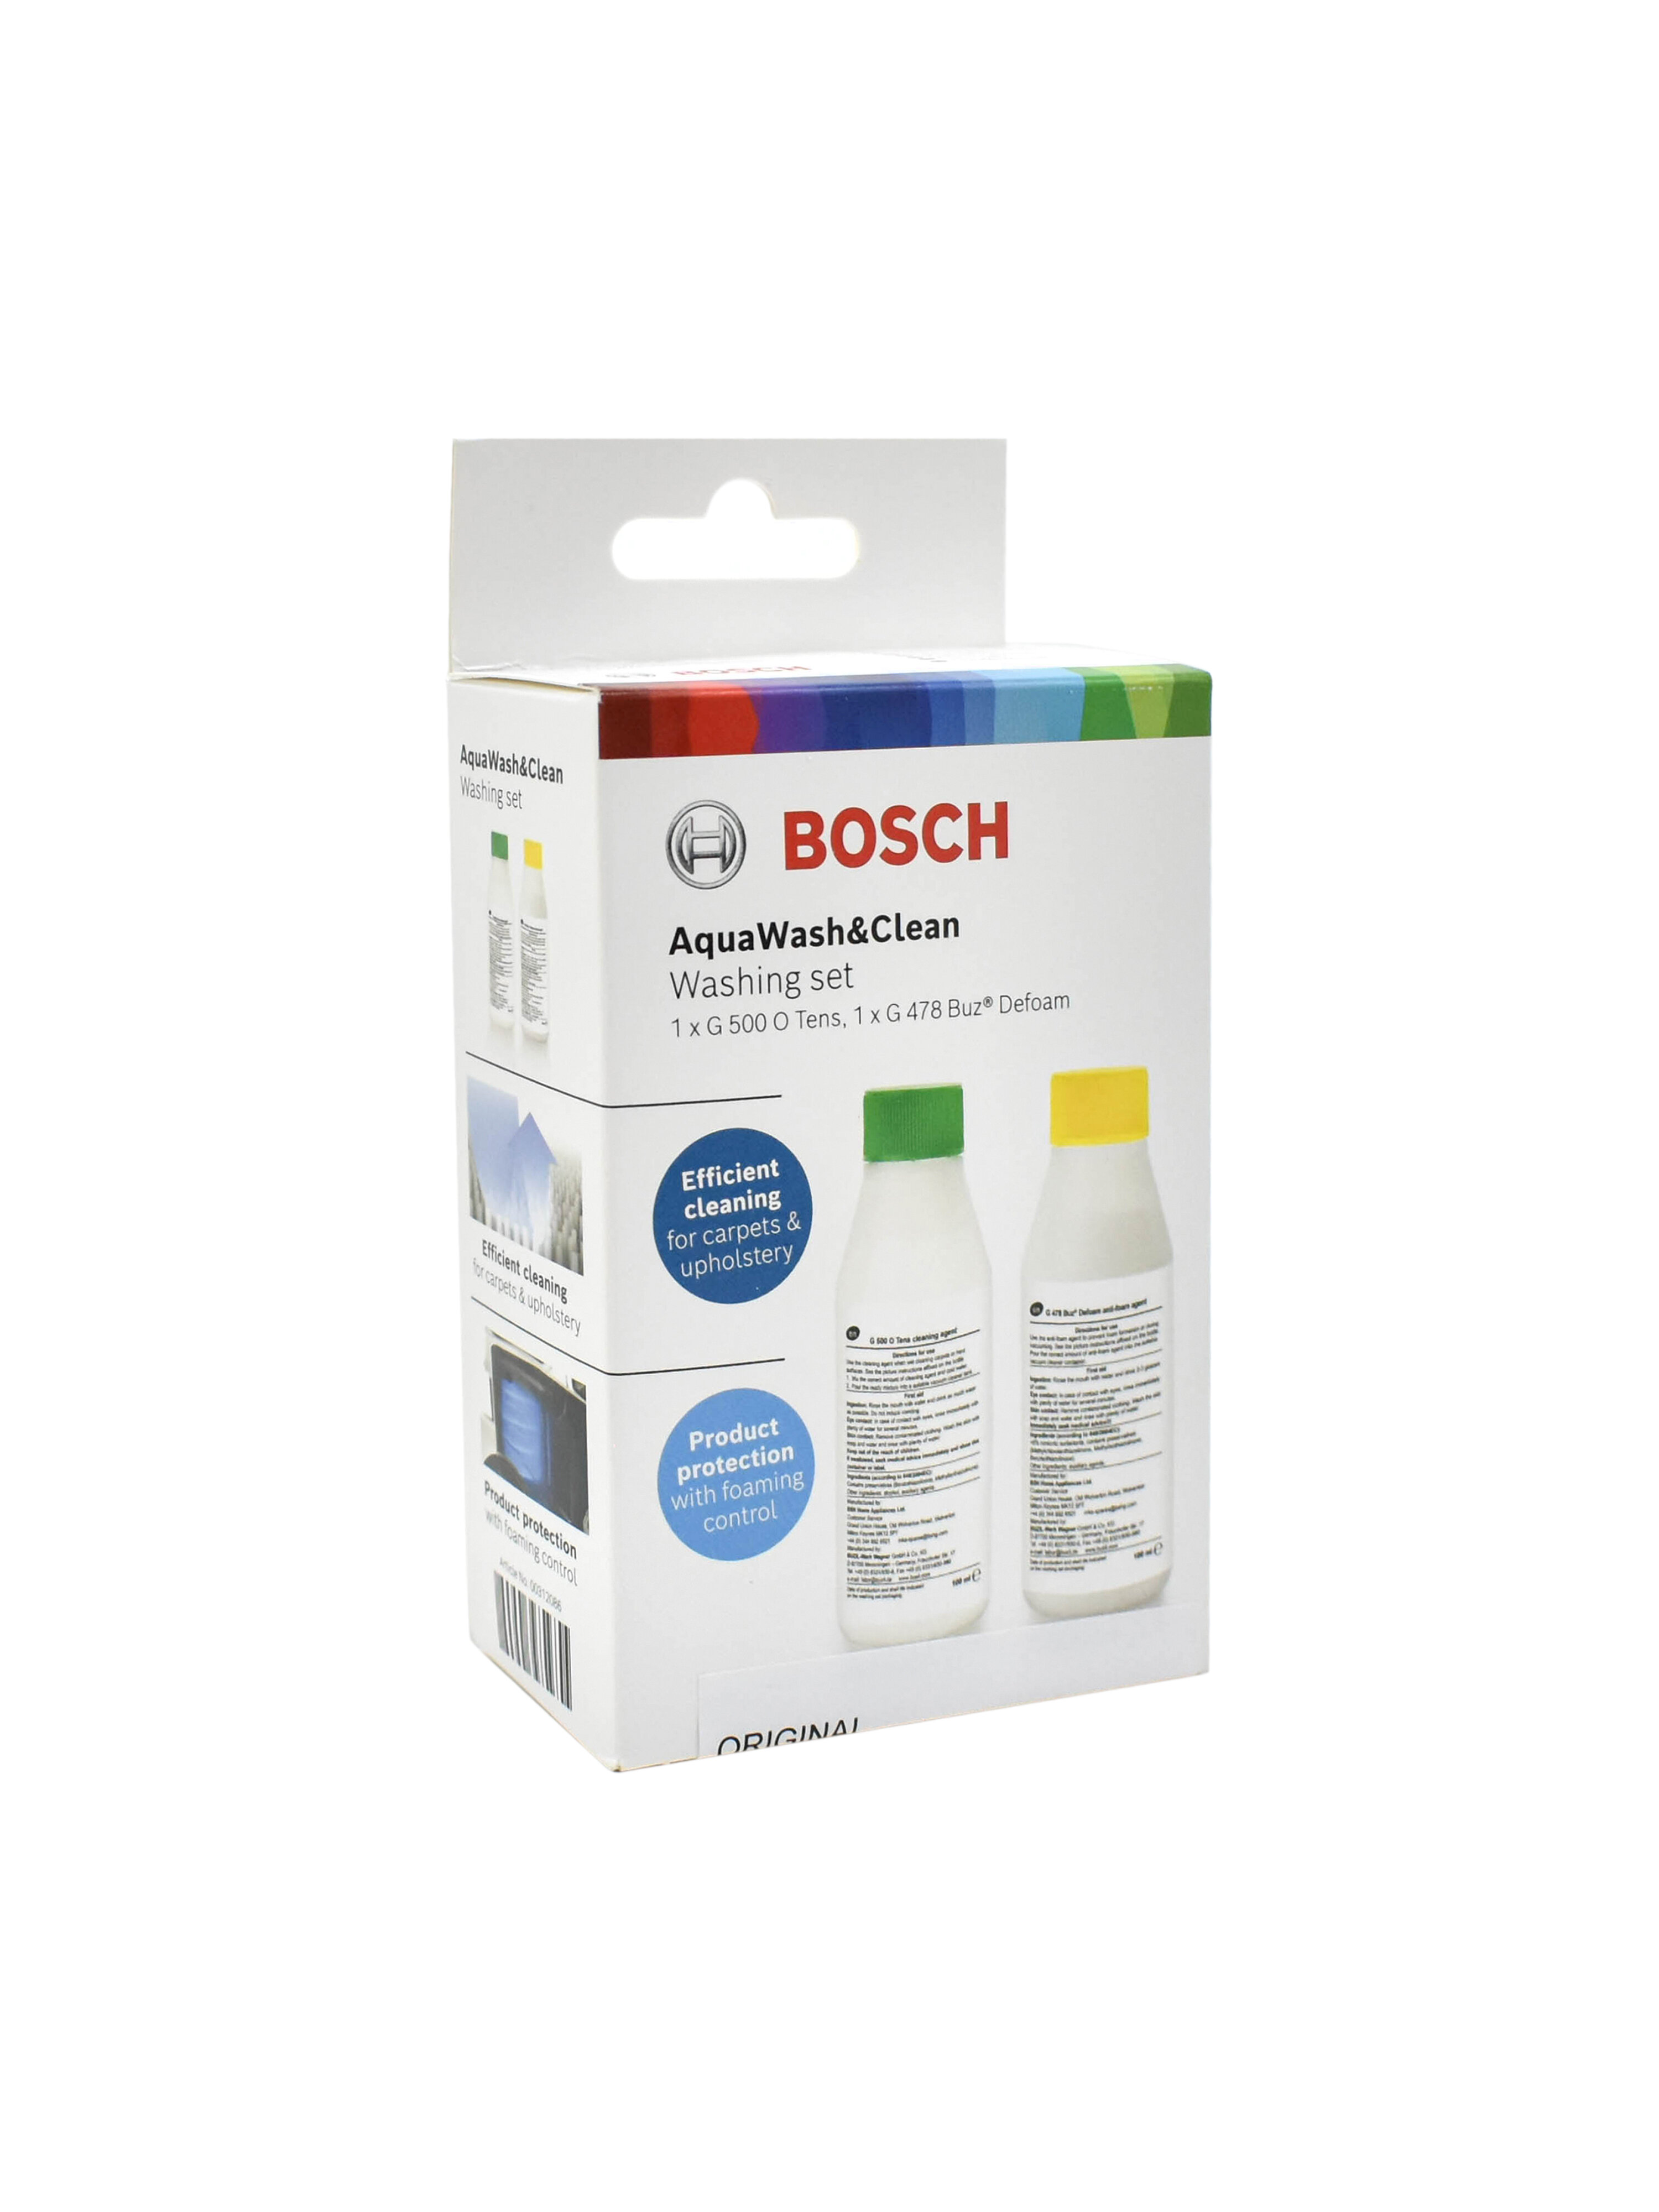 Чистящее средство для влажной уборки для пылесоса Bosch очиститель G500 100ml + пеногаситель G478 100мл